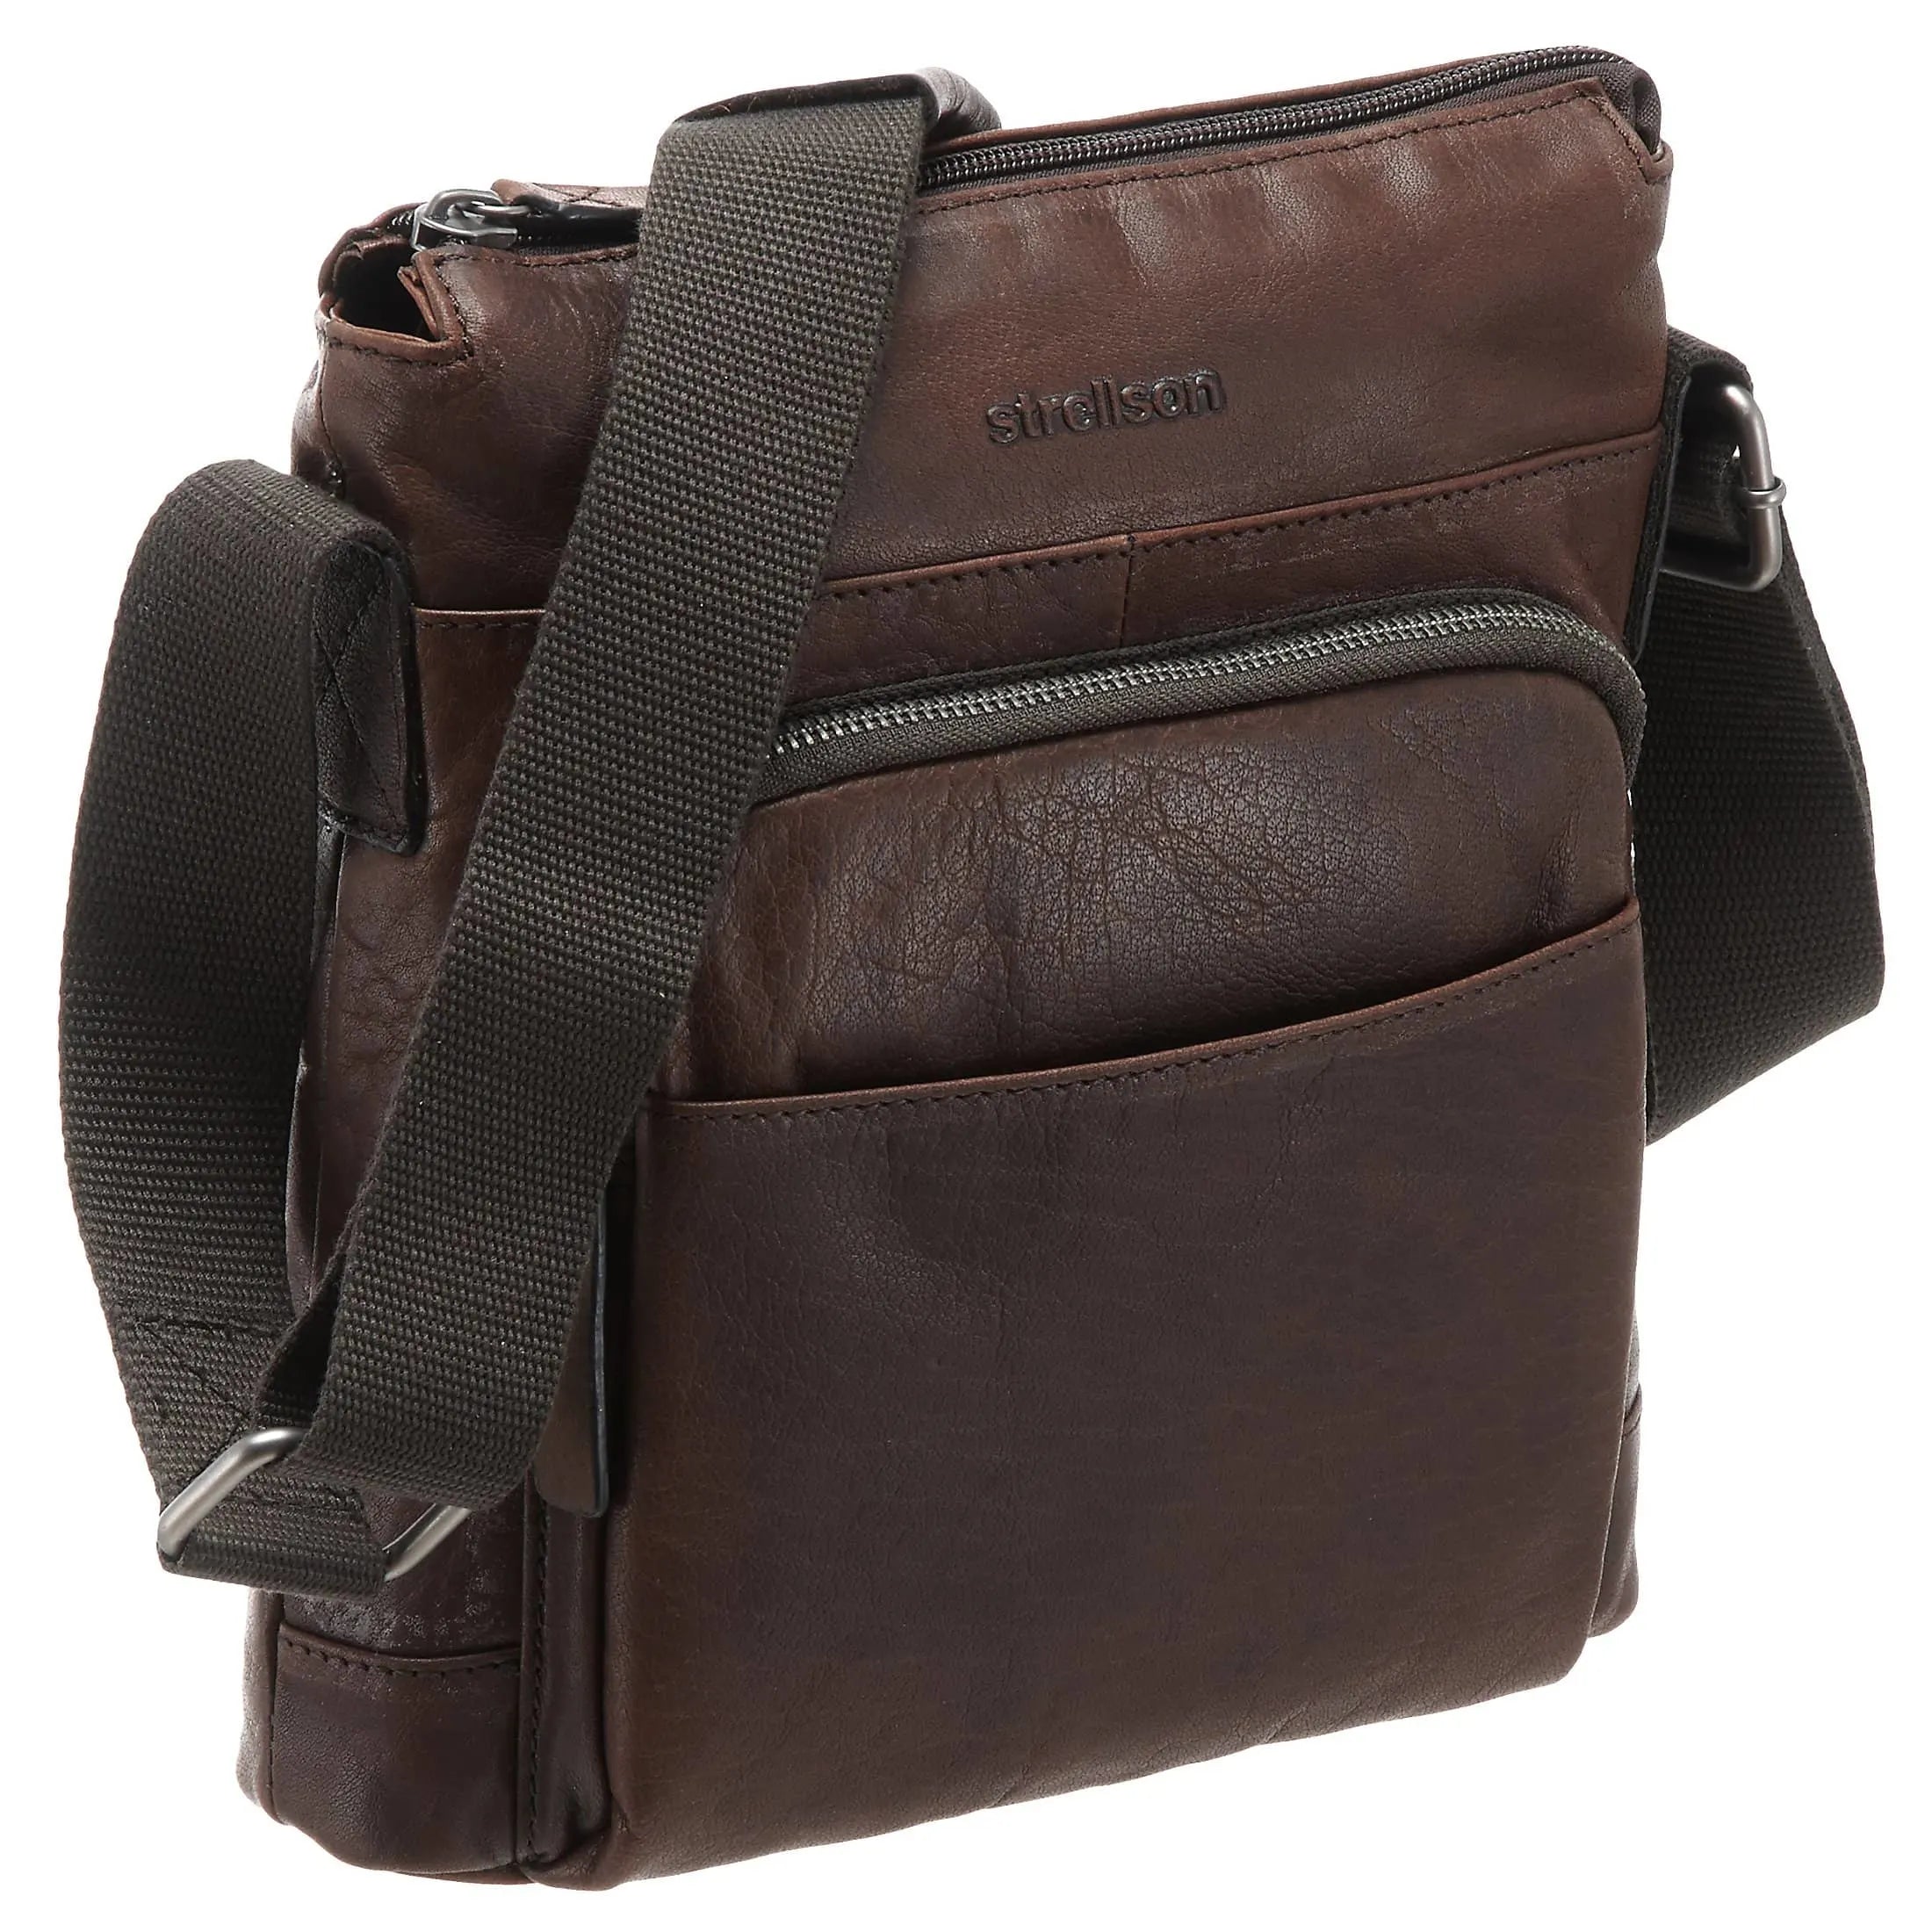 Strellson Coleman 2.0 shoulder bag SVZ 25 cm - dark brown